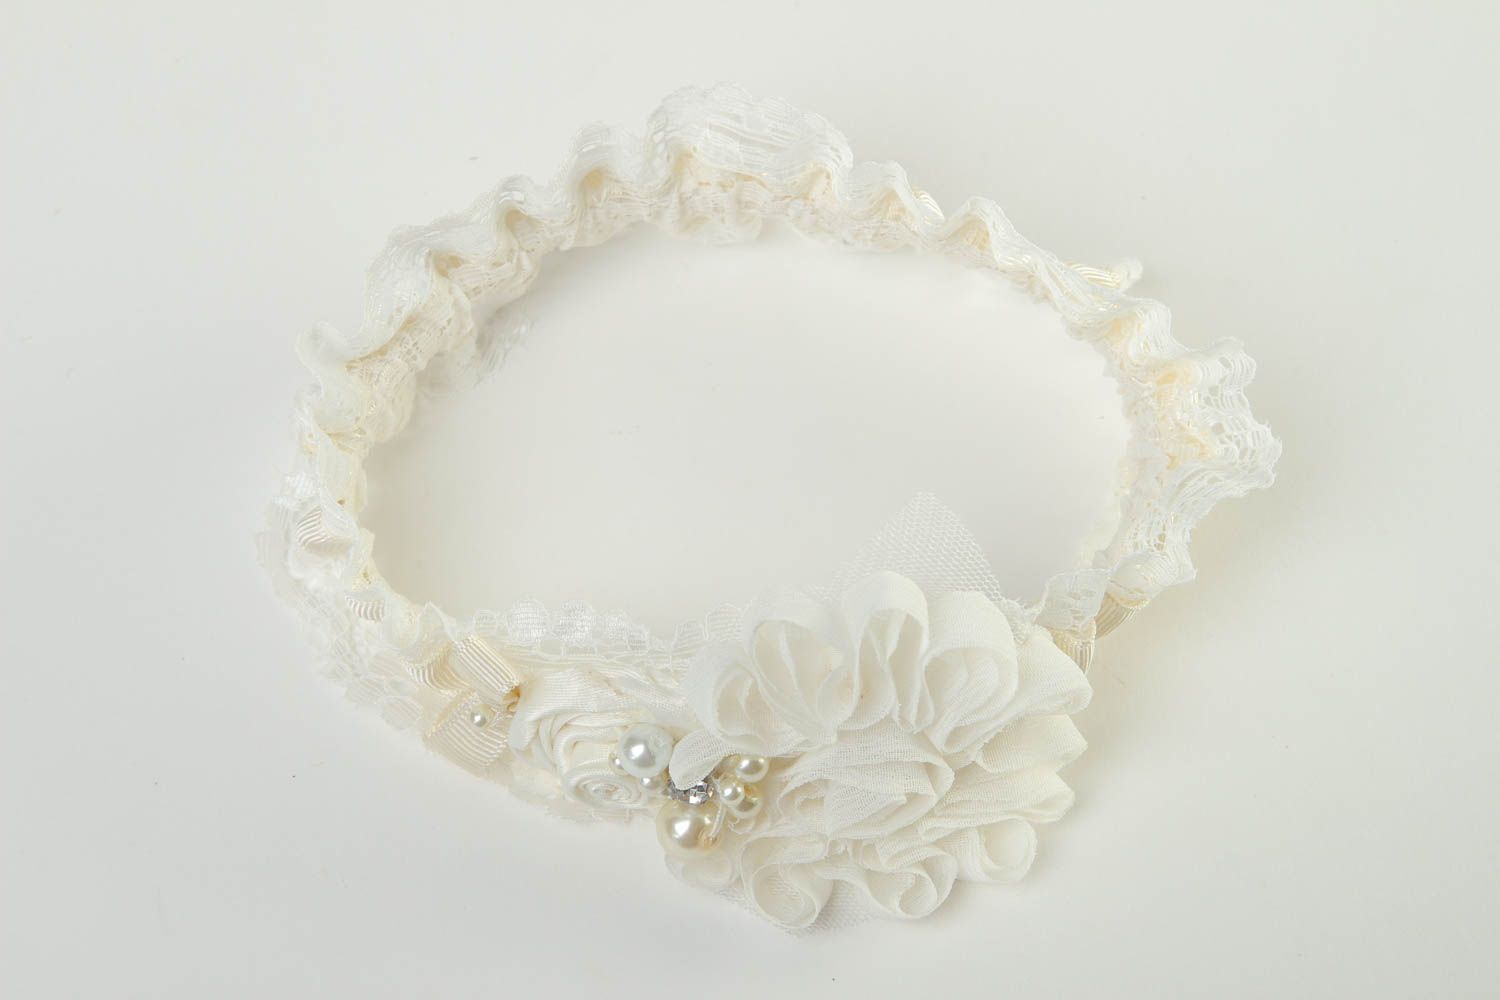 Liga para novia artesanal accesorio de boda decorado con perlas regalo original foto 2